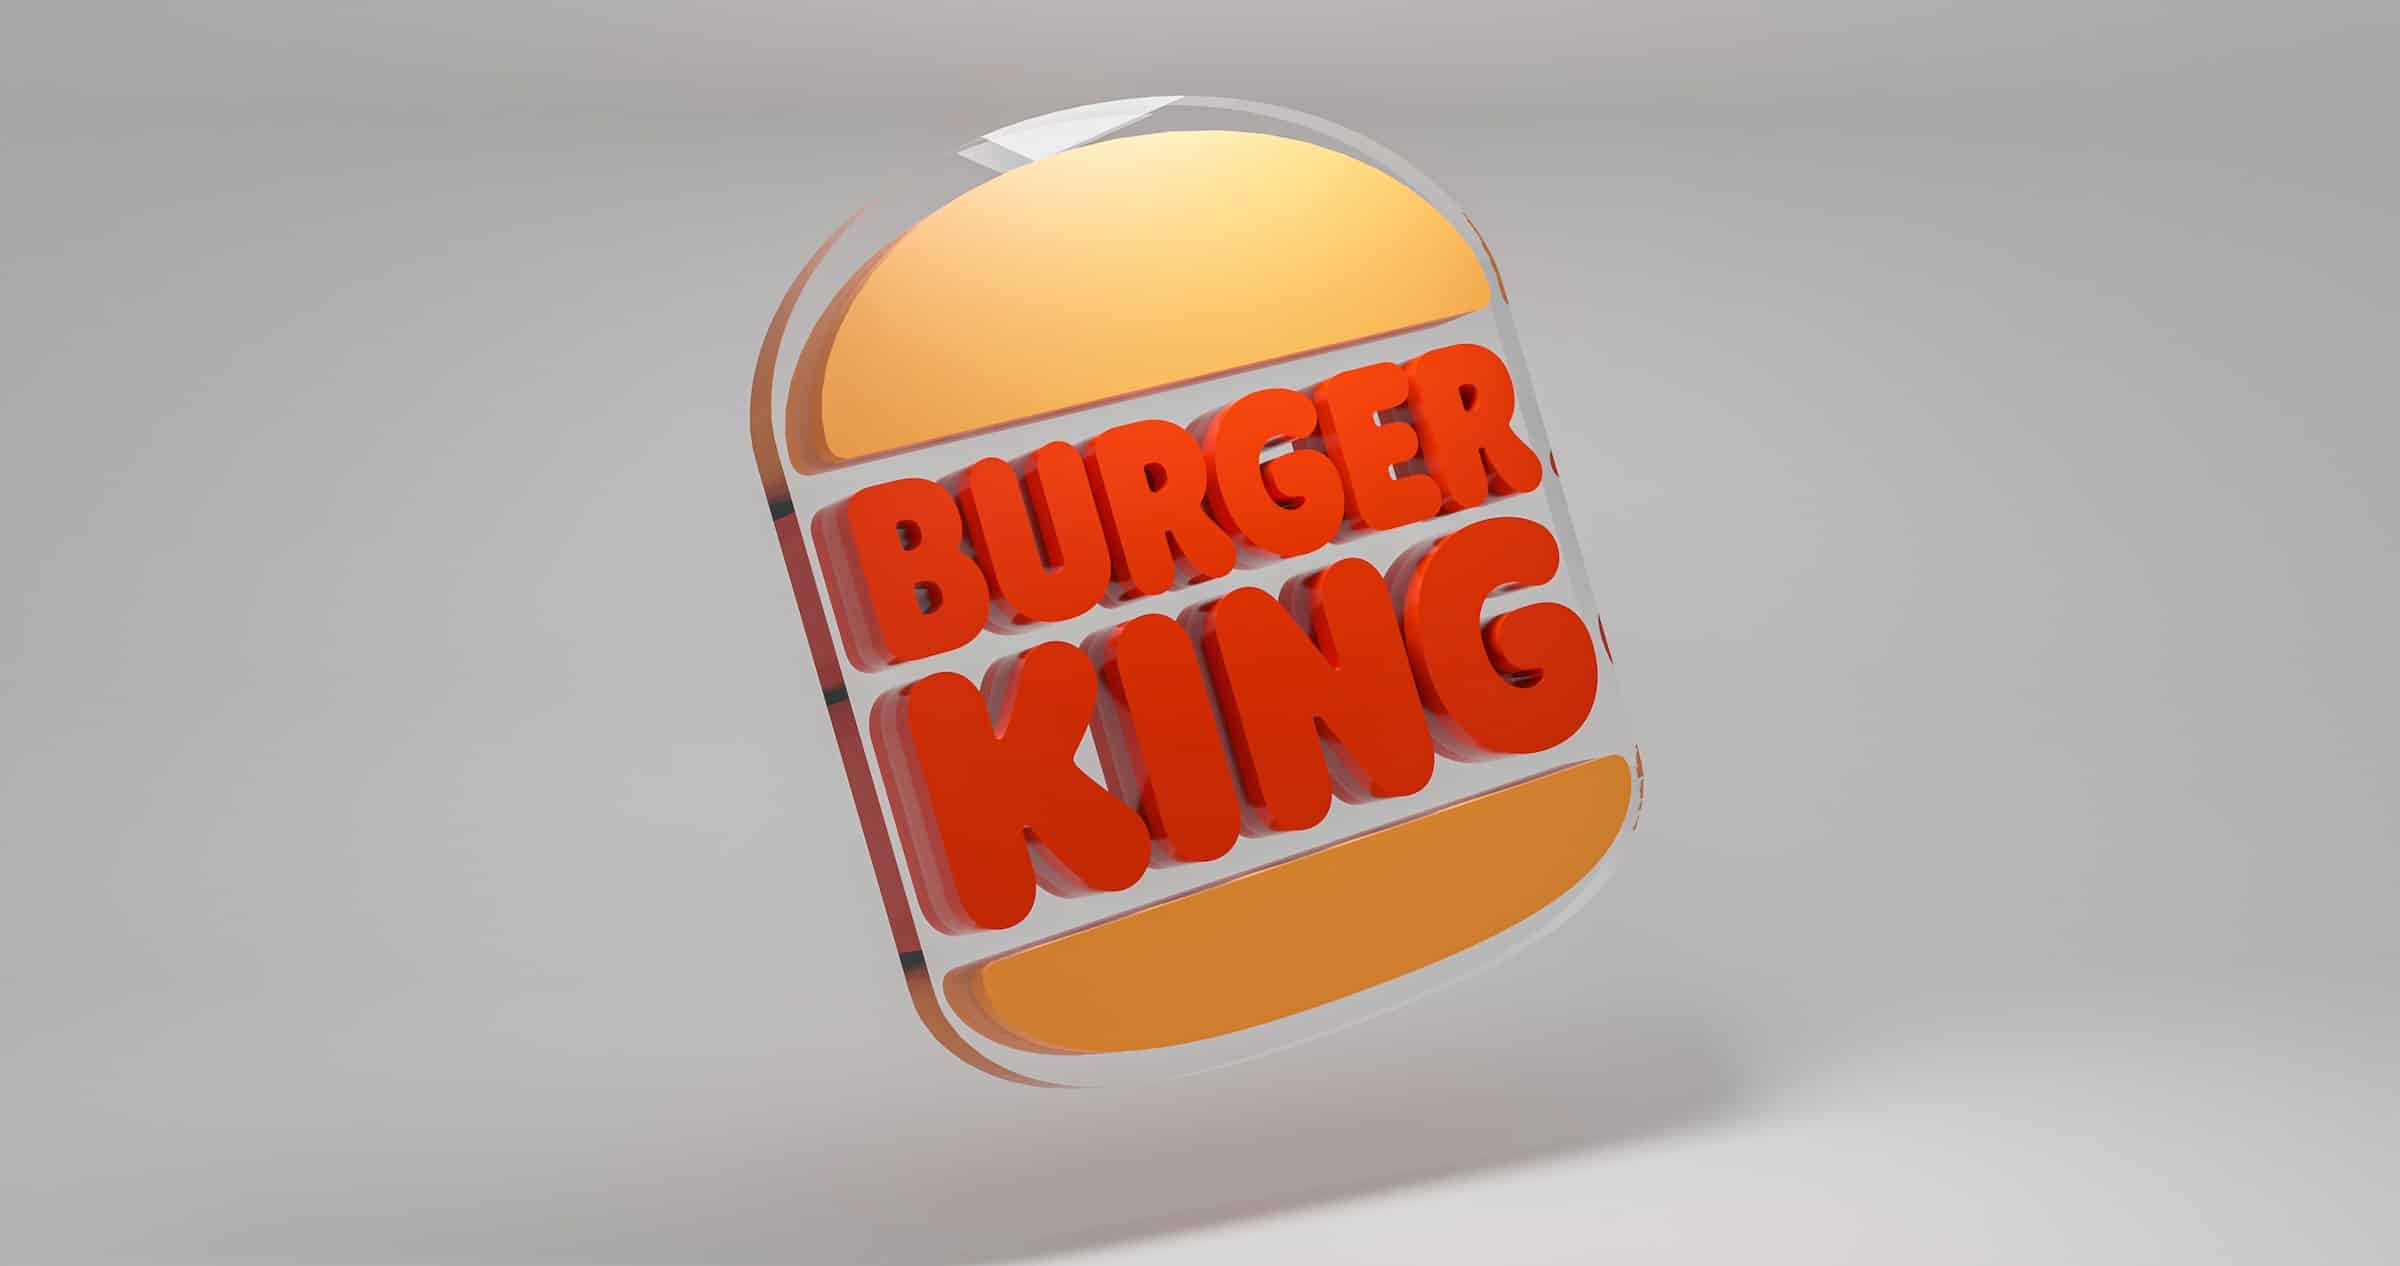 Burger King: entenda melhor as estratégias usadas pela marca